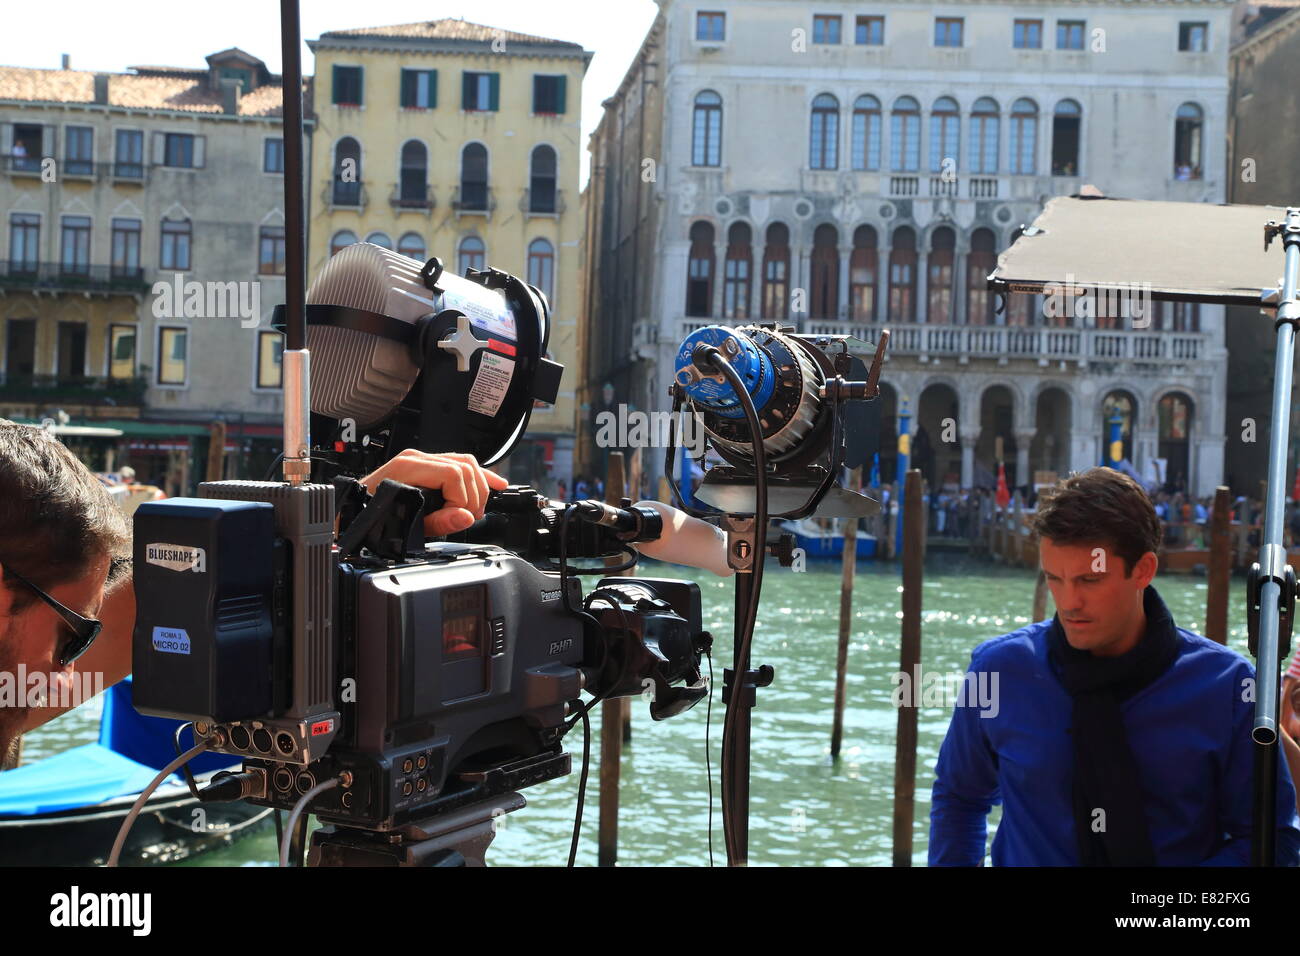 Venedig, Italien. 29. Sep, 2014. Schauspieler George Clooney und Rechtsanwalt Amal Alamuddin kommen für ihre standesamtliche Trauung in Venedig. Stockfoto